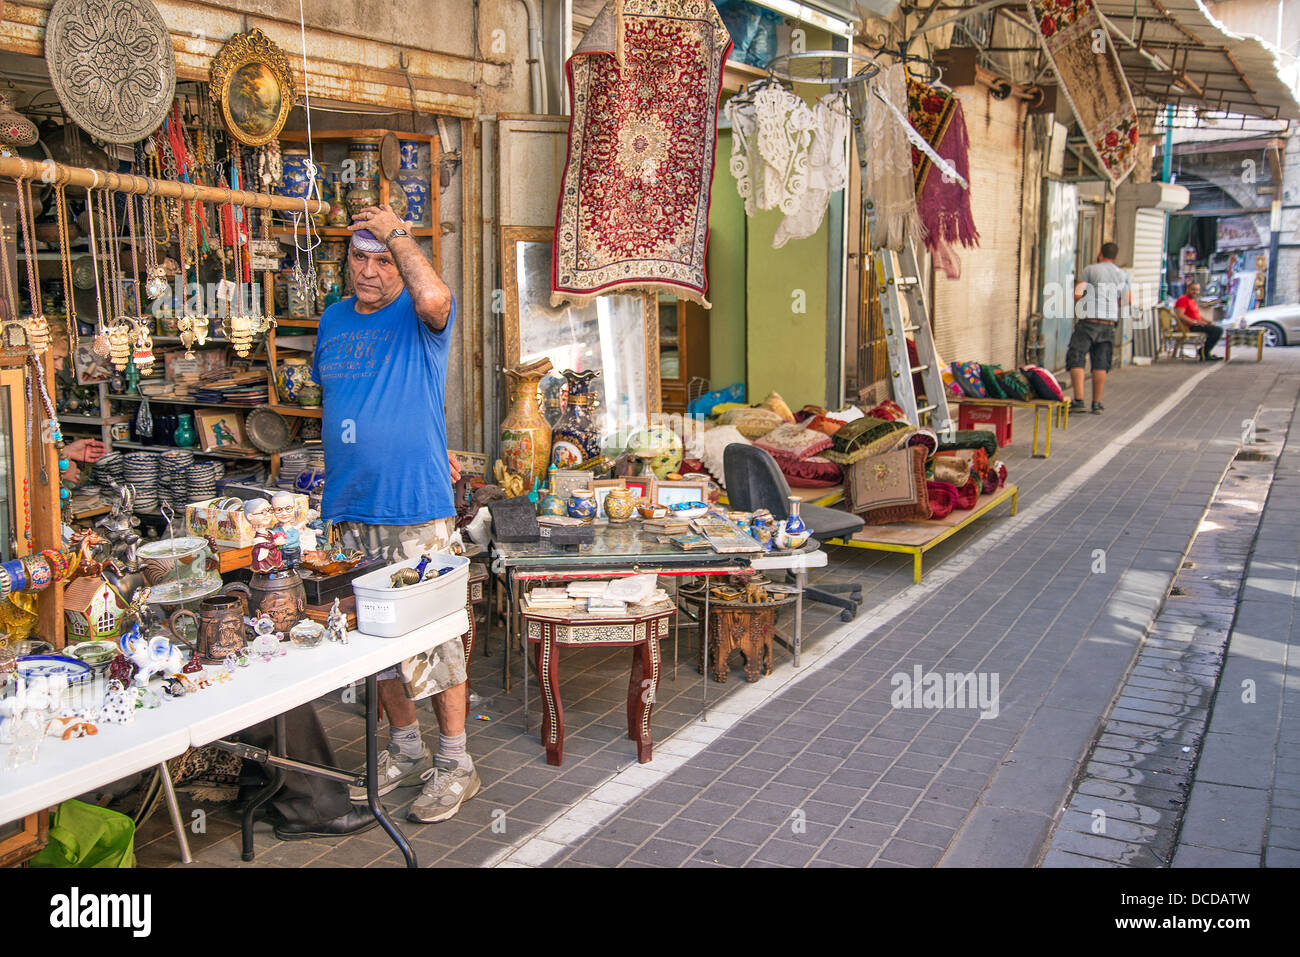 Mercato delle pulci shop in tel aviv città vecchia Israele Foto Stock